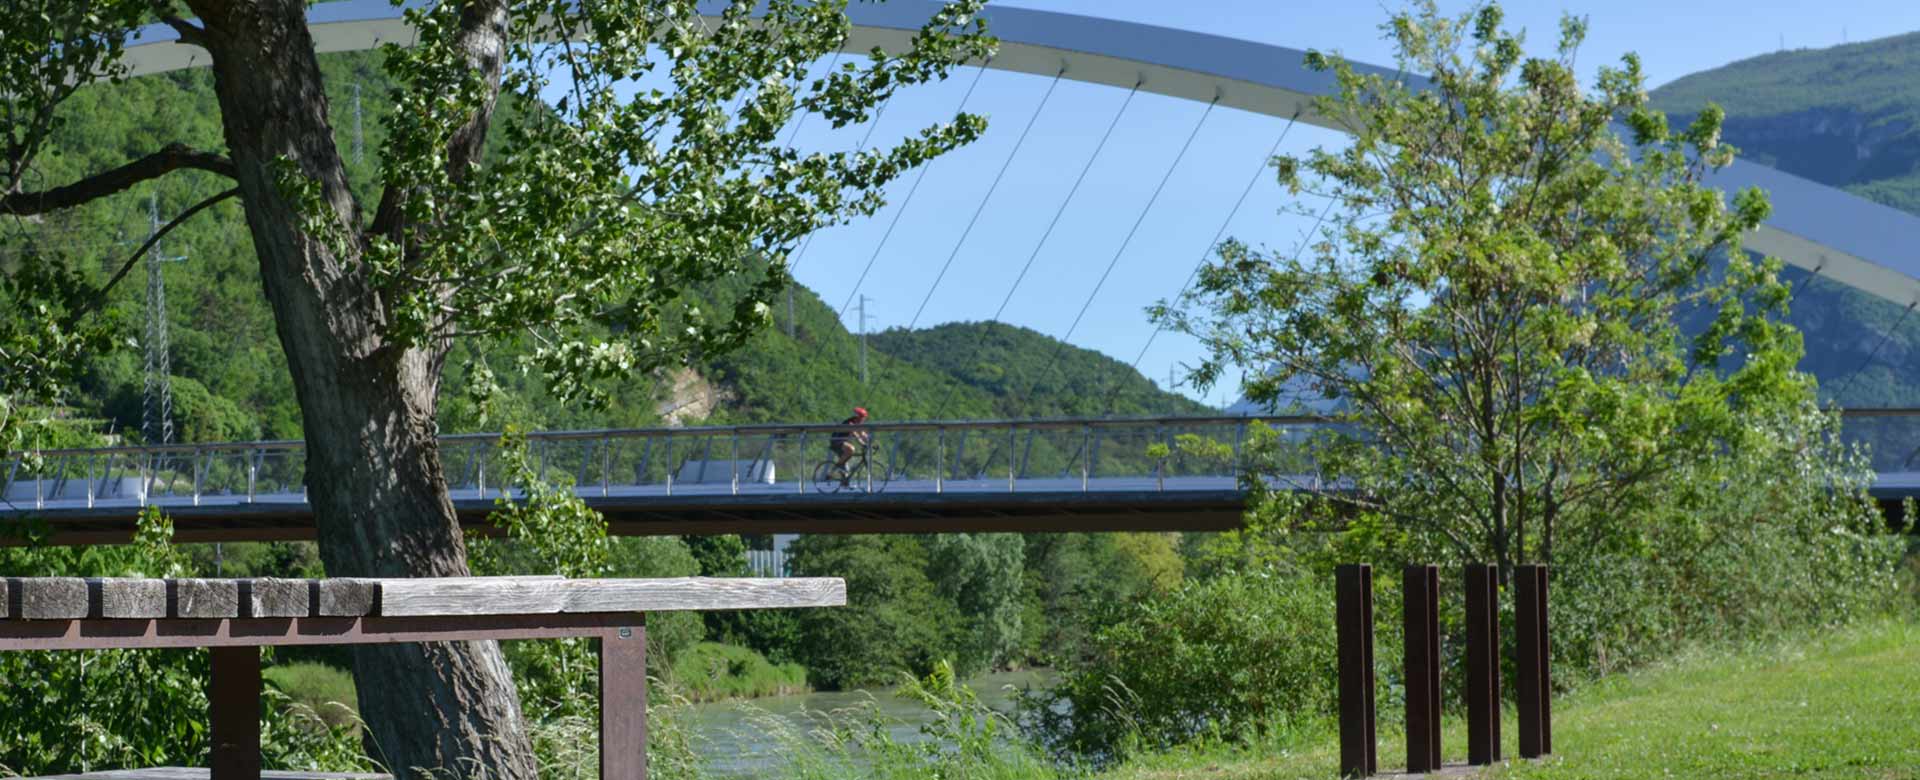 Il ponte ciclopedonale di Nomi sul fiume Adige: area attrezzata per il ciclista ©Christian Cristoforetti